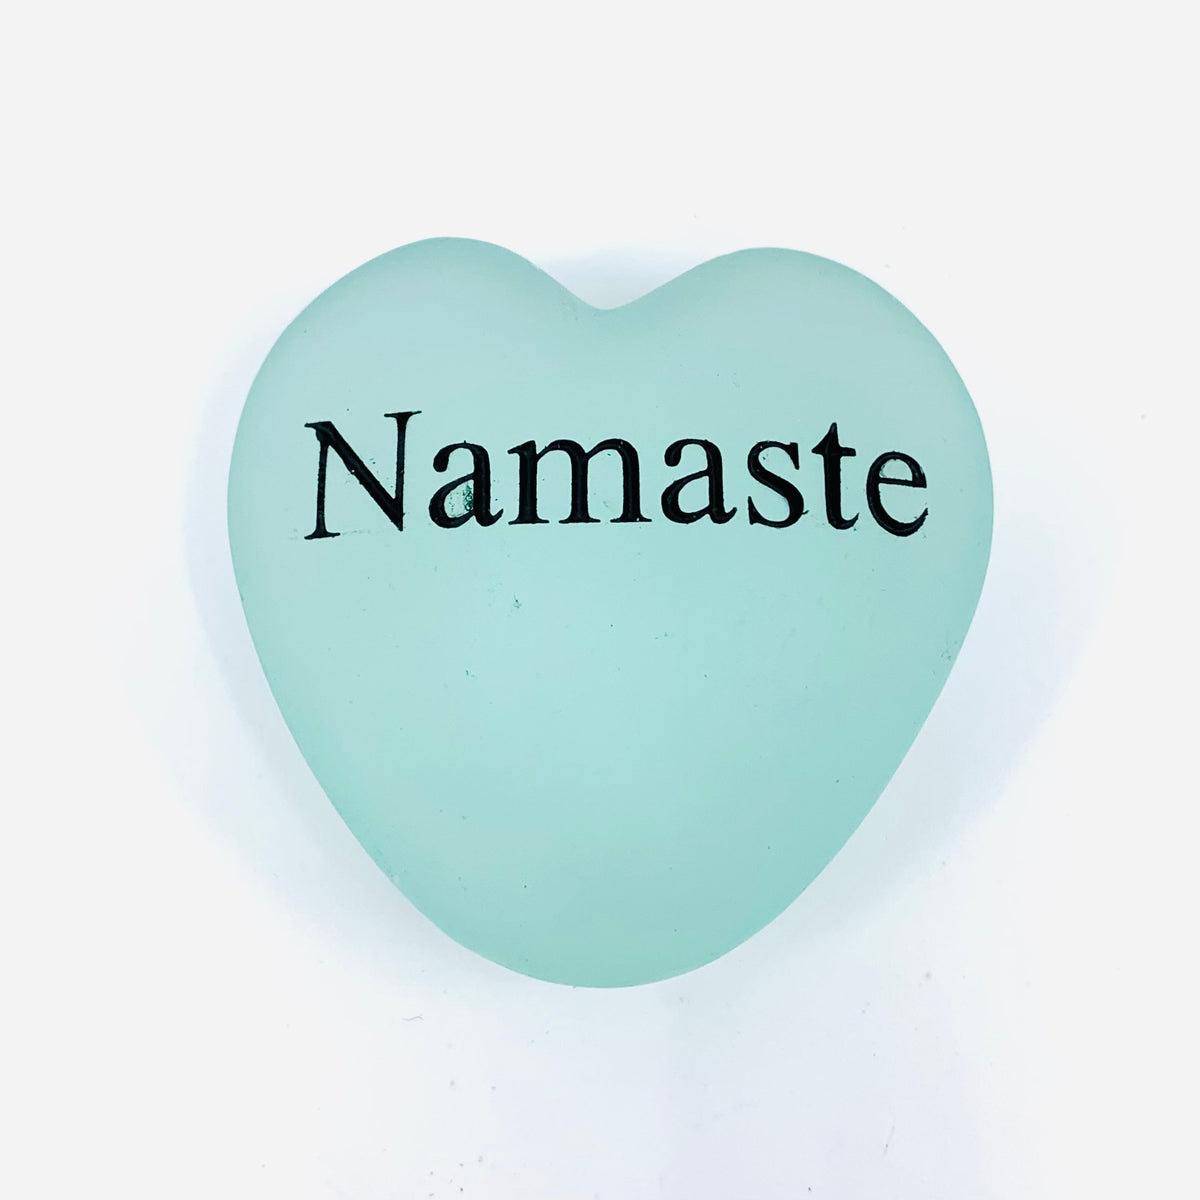 Heart Shaped Garden Stone Luke Adams Glass Blowing Studio Namaste 